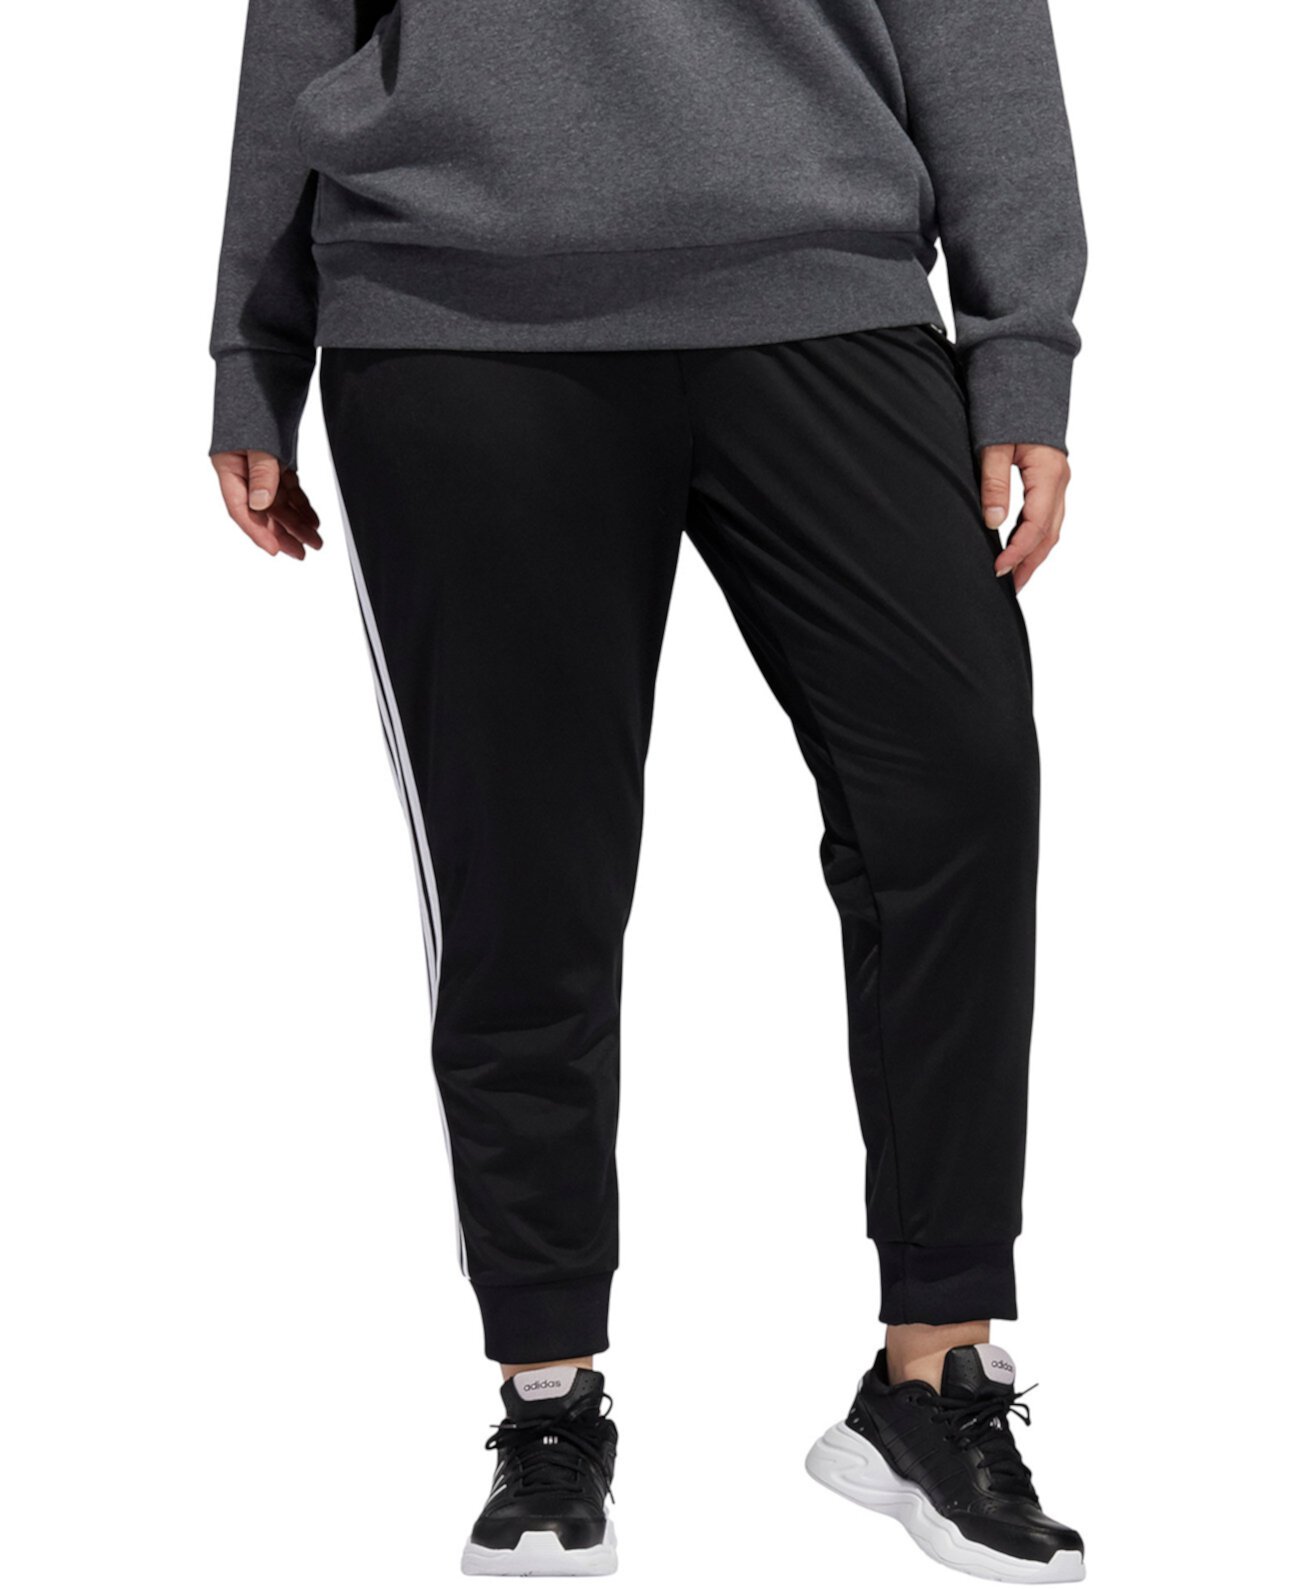 Трикотажные брюки большого размера с молнией во всю длину Adidas